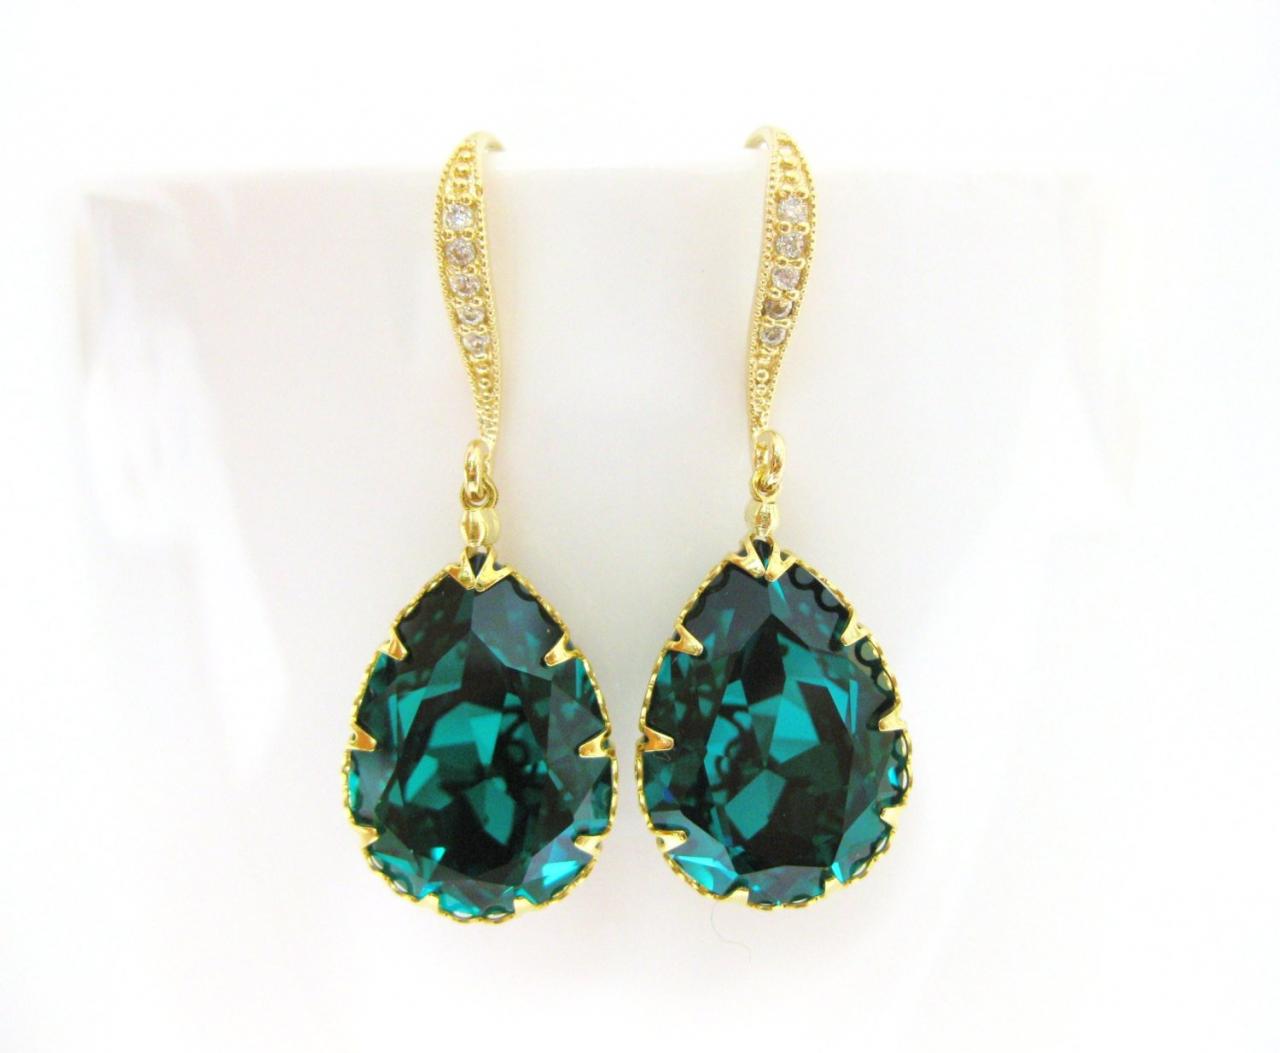 Emerald Green Earrings Swarovski Crystal Teardrop Earrings Wedding Jewelry Bridal Earrings Bridesmaid Gift Dangle Drop Earrings (e135)